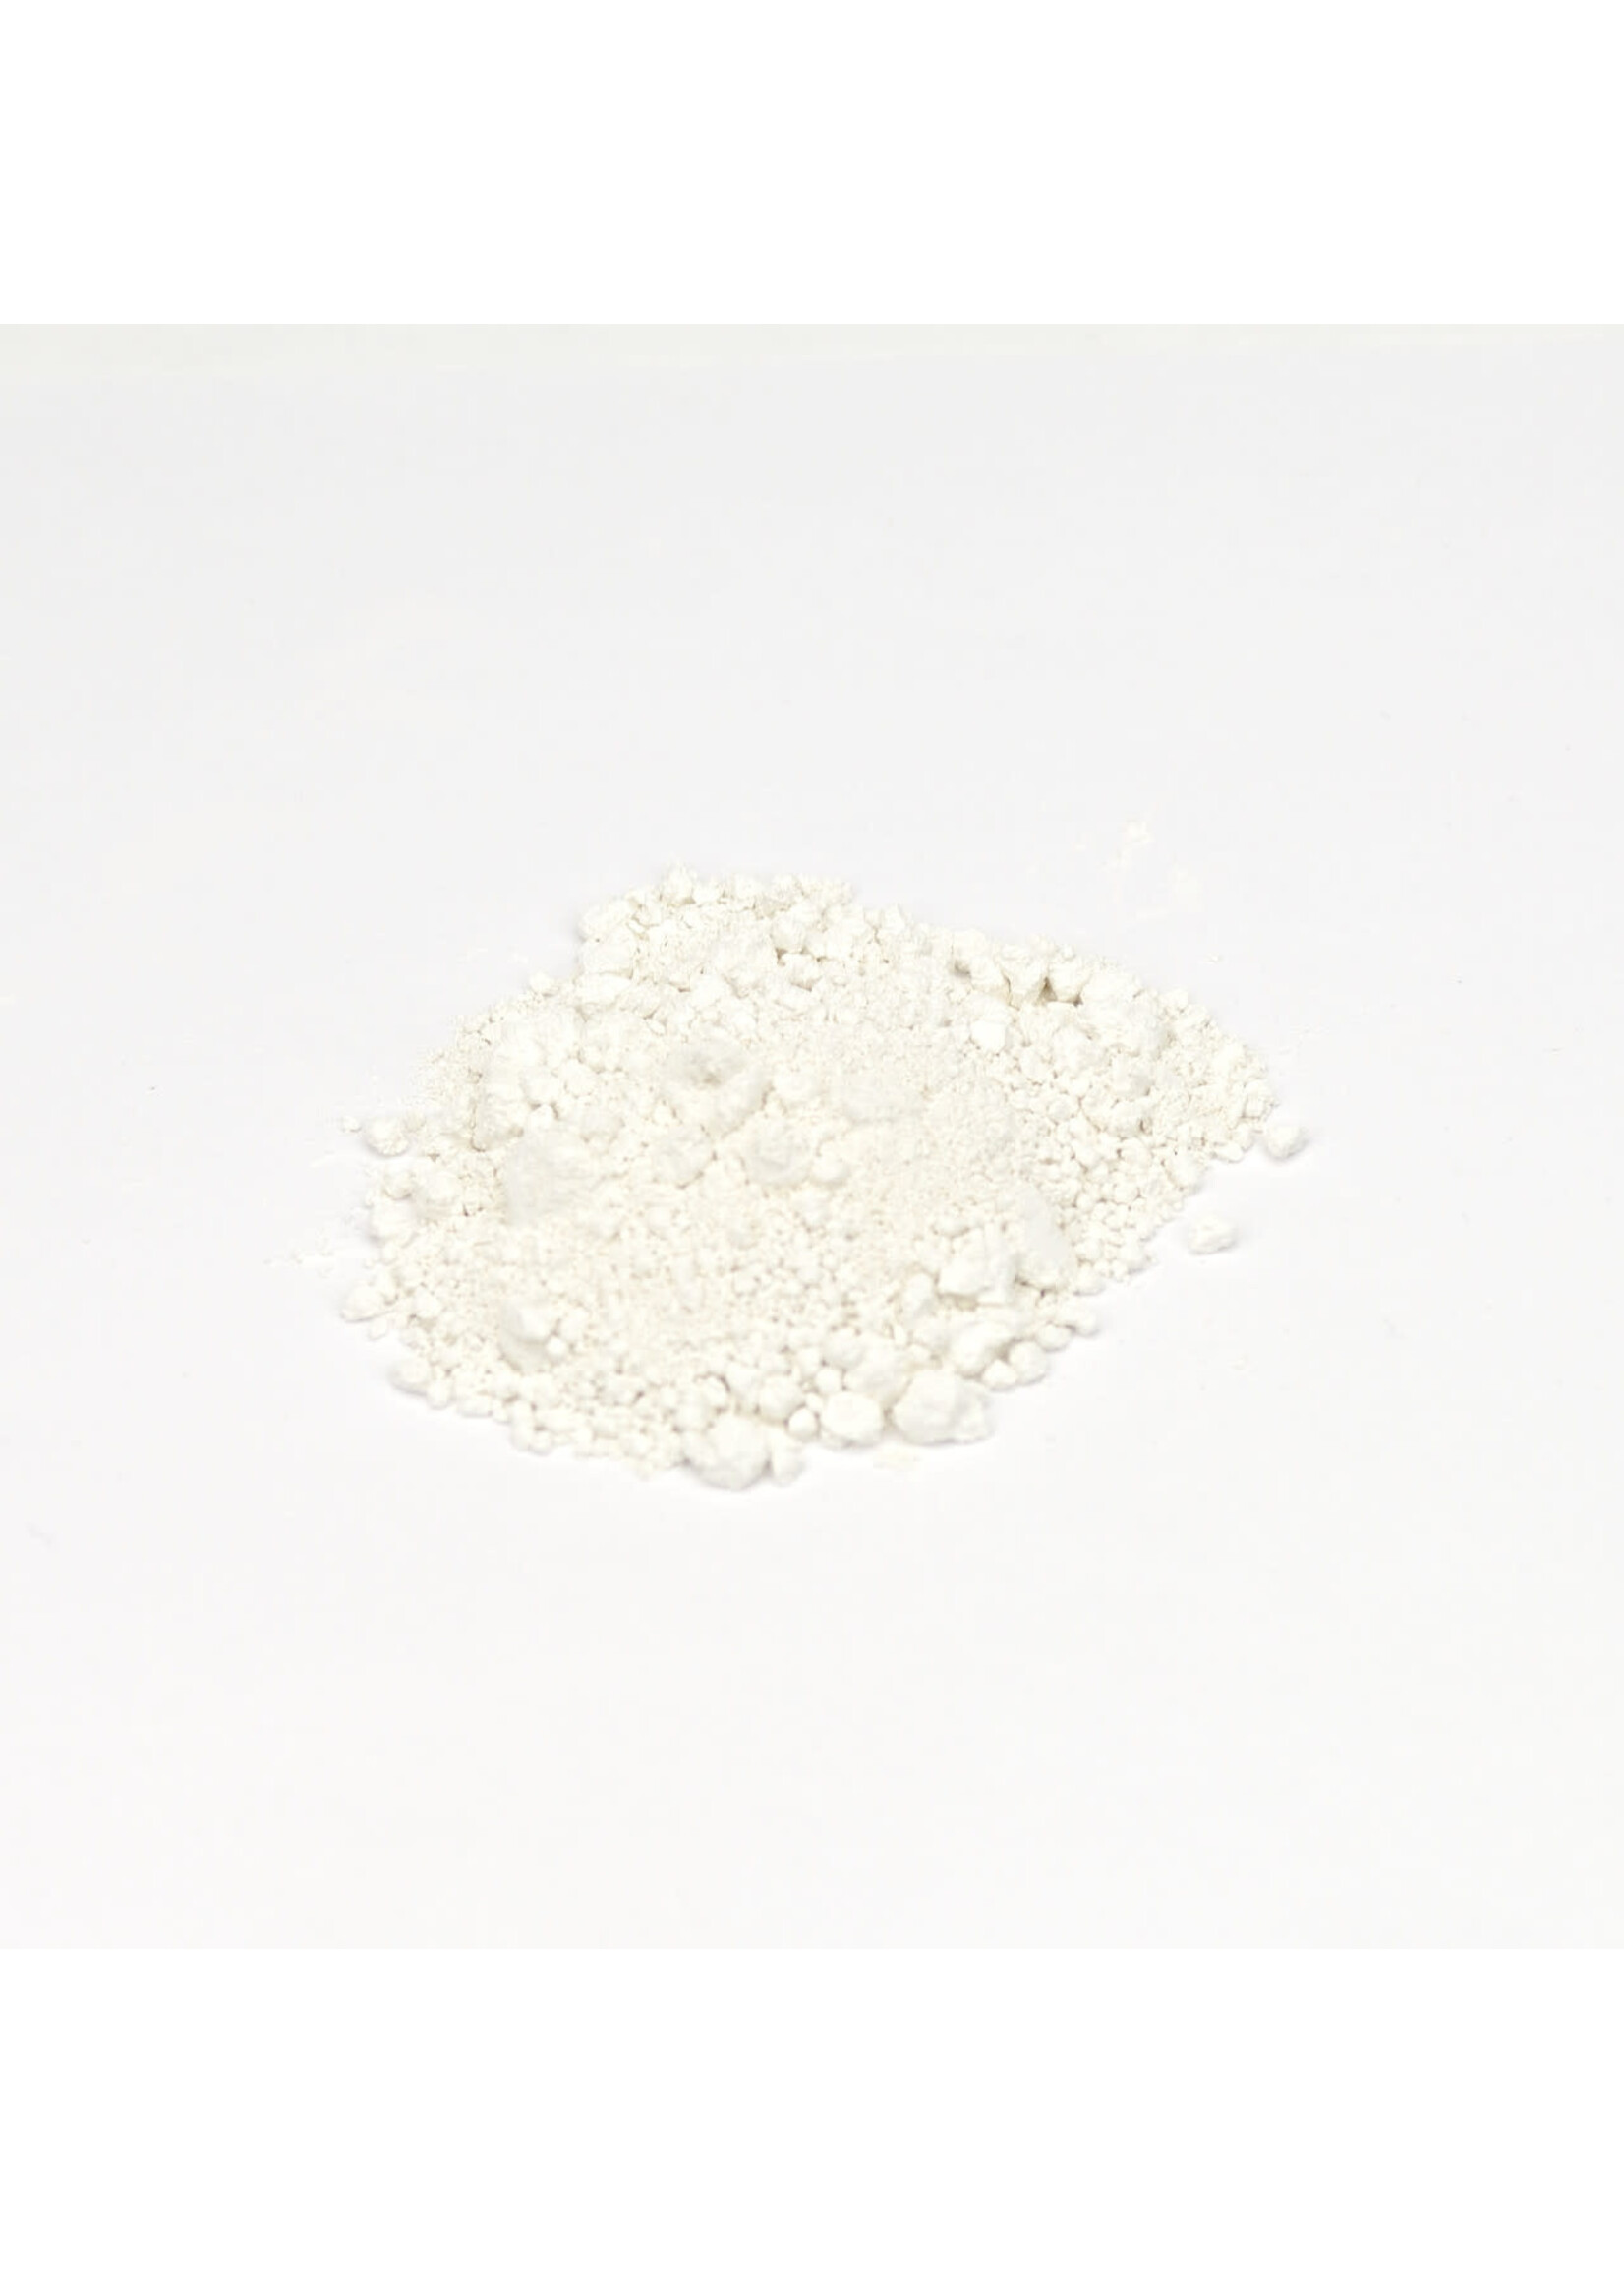 Kaolin | Powdered Clay